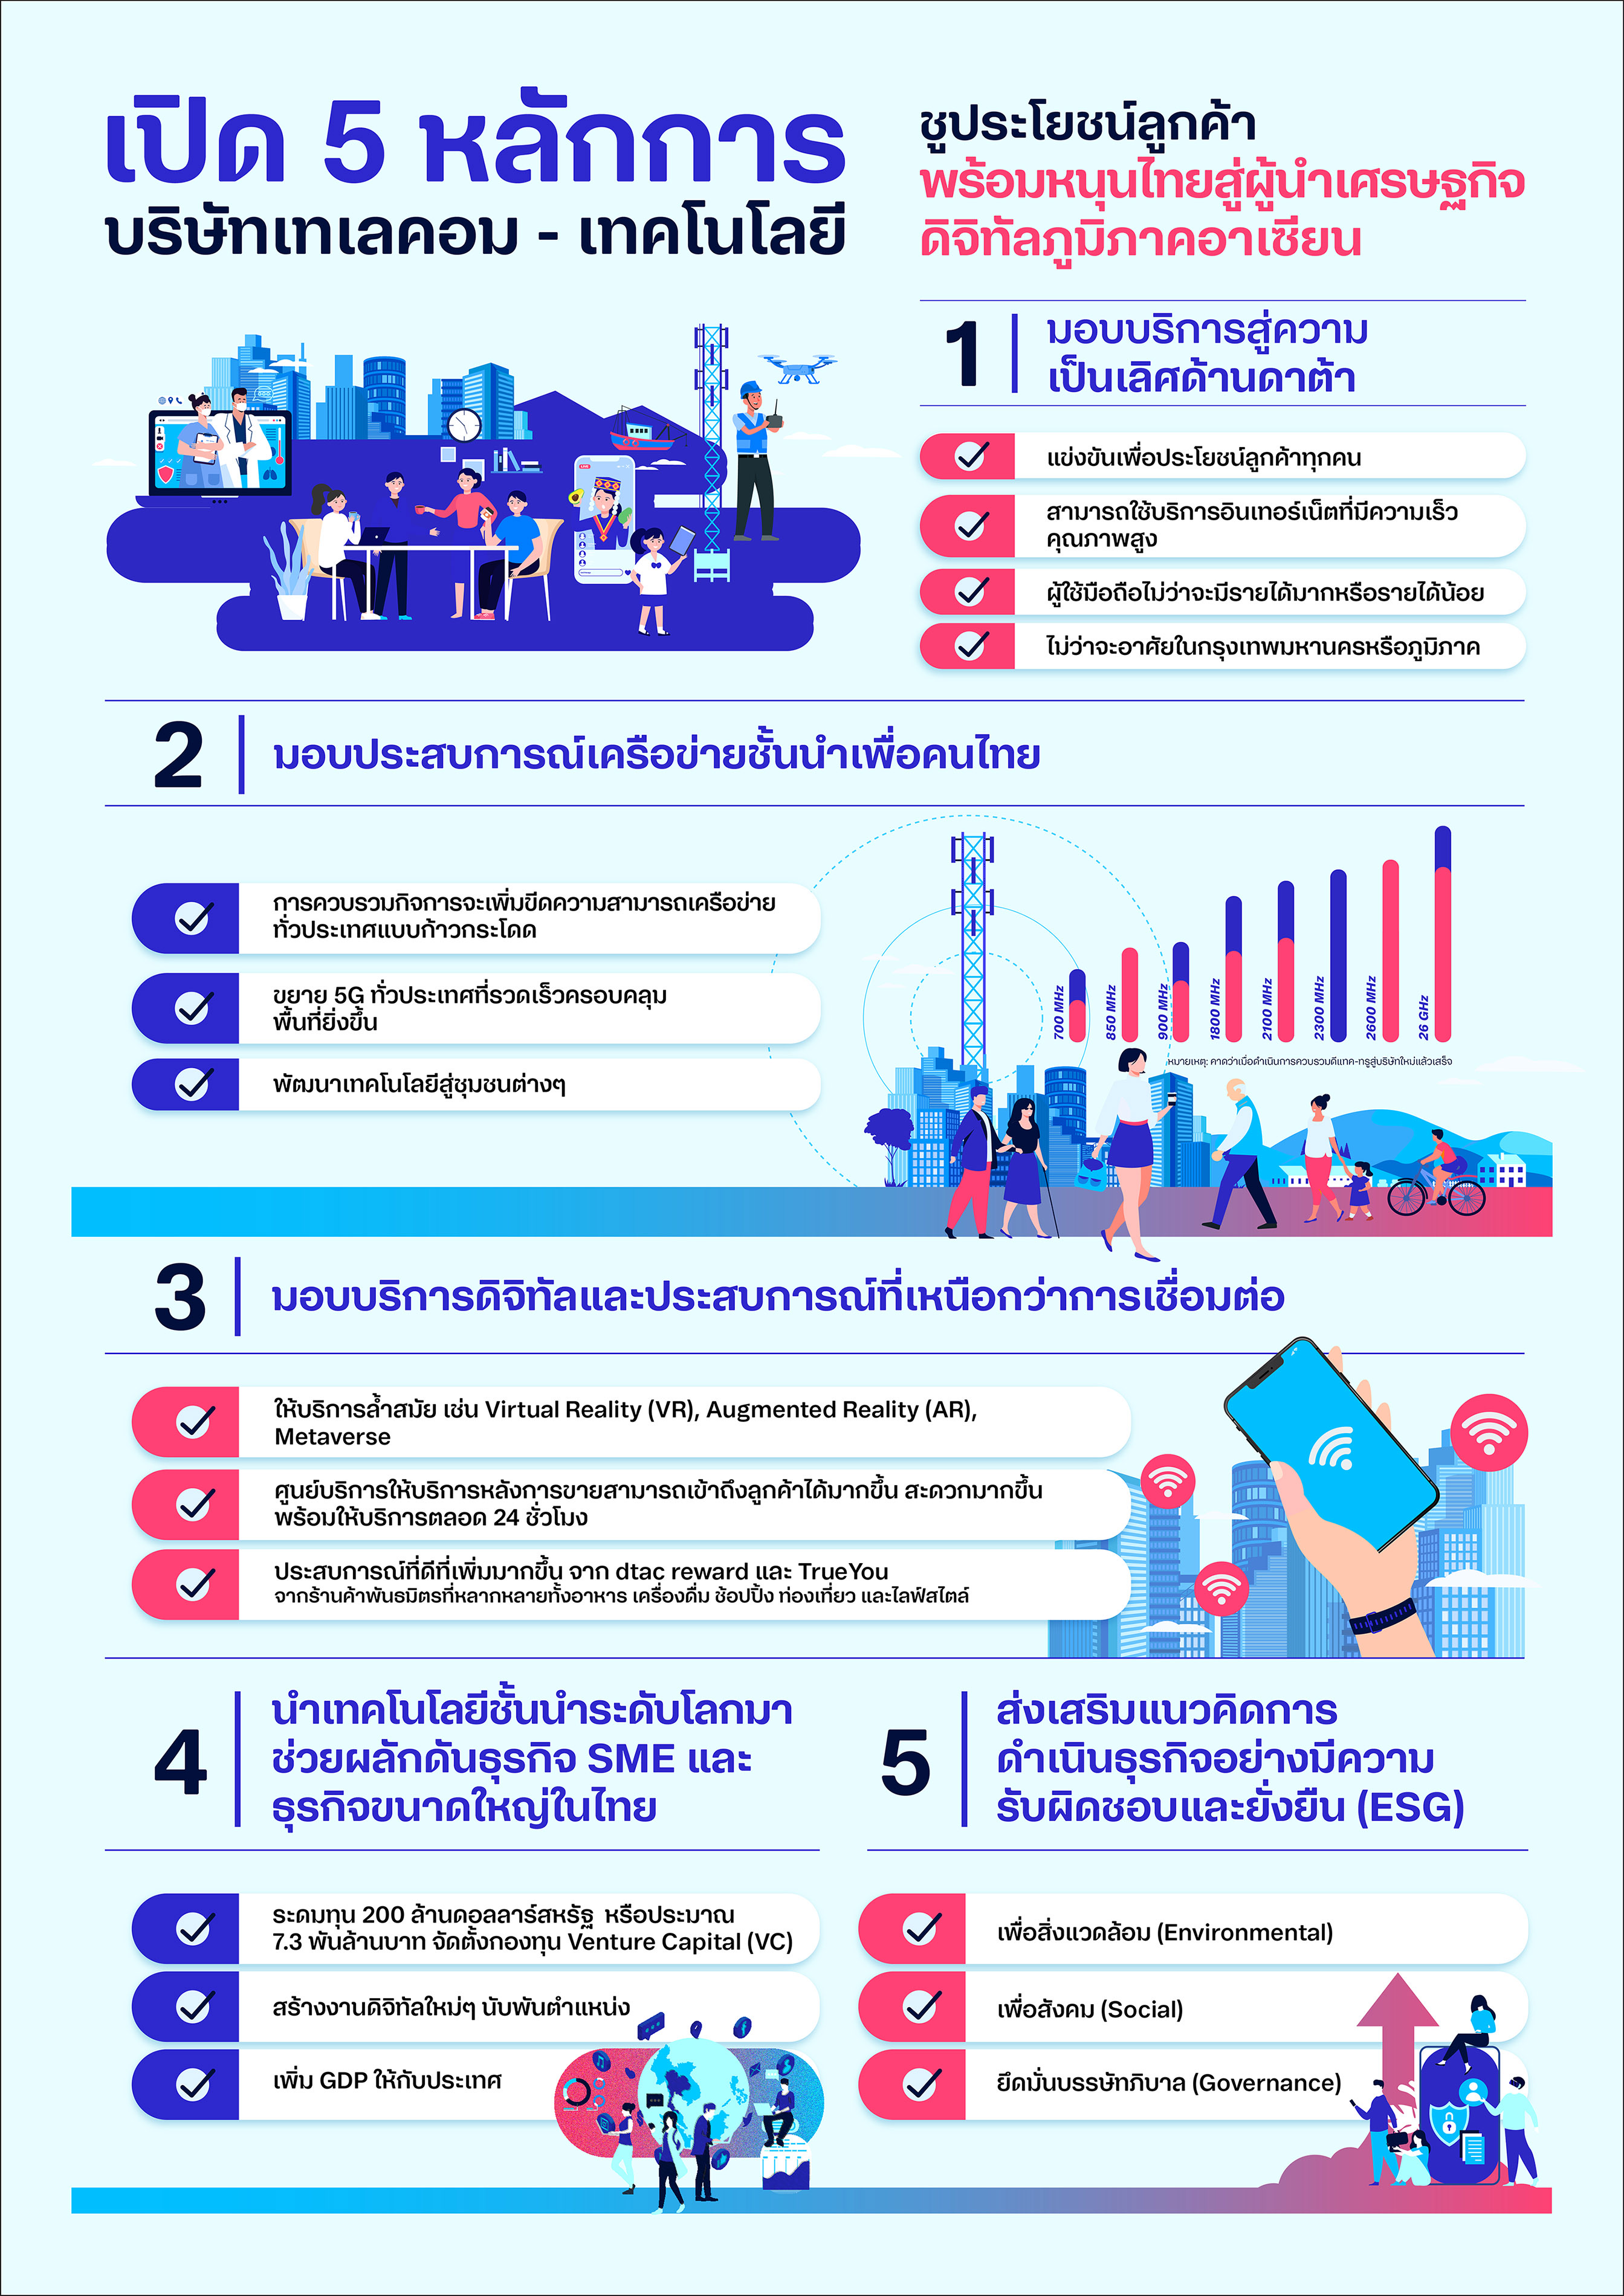 เปิด 5 หลักการ บริษัทเทเลคอม-เทคโนโลยี เผยชูประโยชน์ลูกค้า พร้อมหนุนไทยสู่ผู้นำเศรษฐกิจดิจิทัลอาเซียน